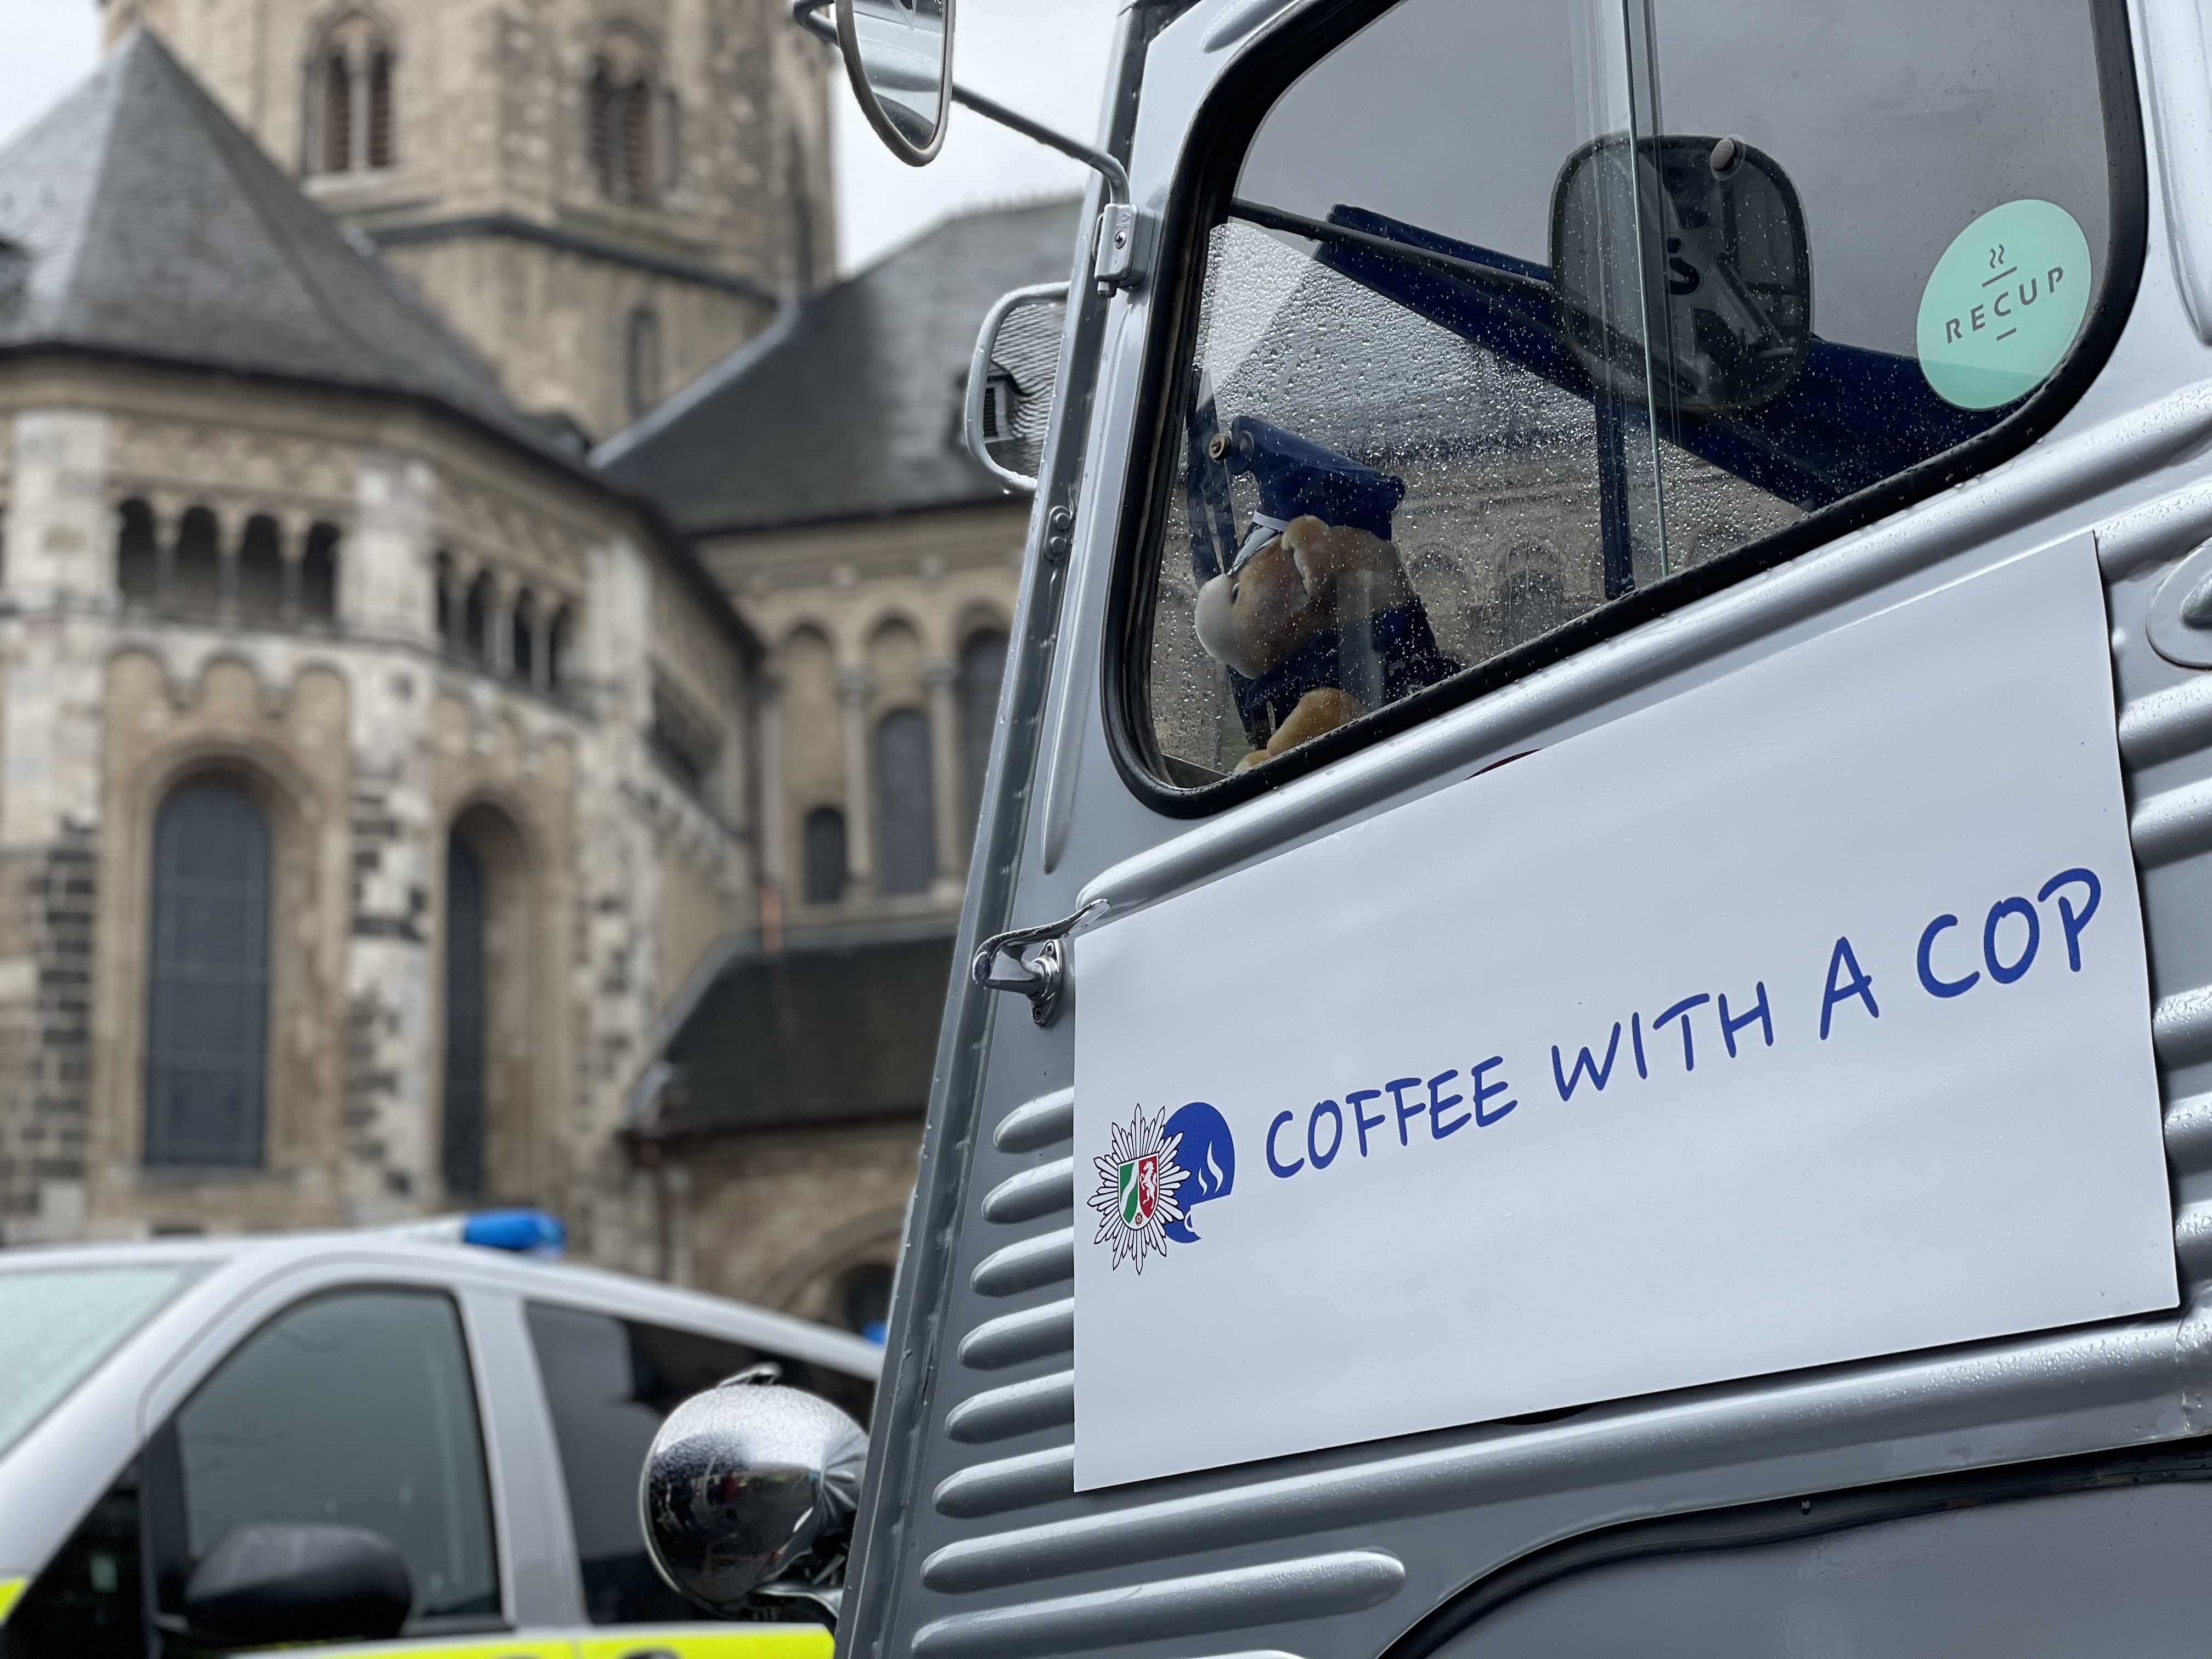 Logo der Aktion "Coffee with a Cop" auf einer Seitentür. Das Logo zeigt den Polizeistern und eine Tasse Kaffee in einem blauen Kreis sowie den Schriftzug Coffee with a Cop. Im Hintergrund ein Streifenwagen der Polizei und die Bonner Münsterkirche